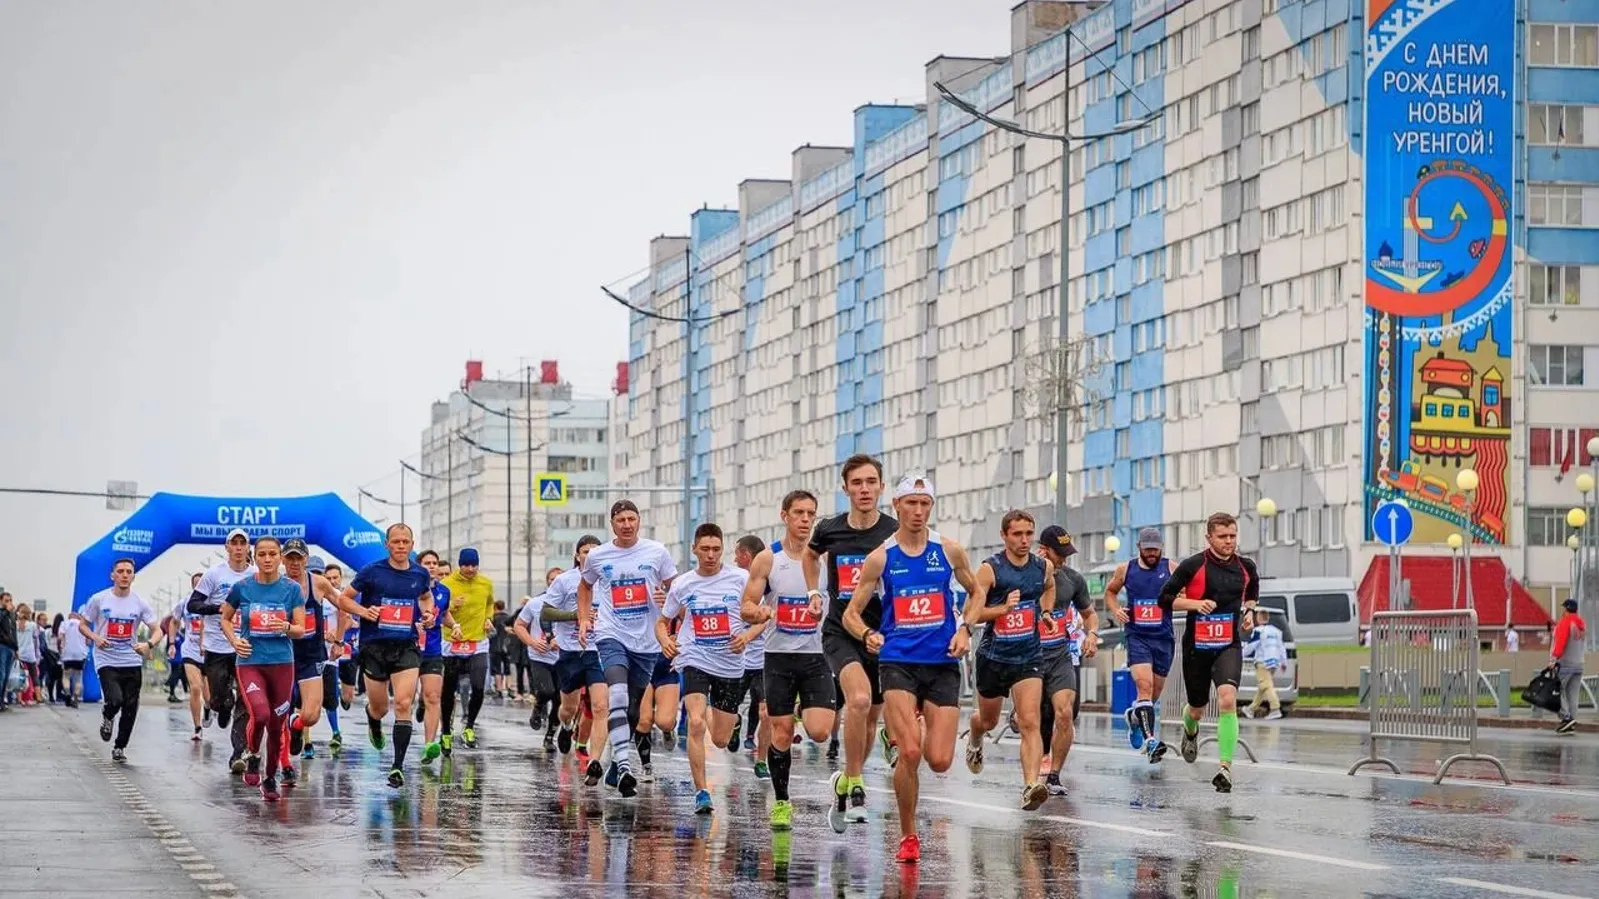 Среди участников «Ямальского марафона» есть как профессиональные бегуны, так и любители. Фото: t.me/ufkis_nur